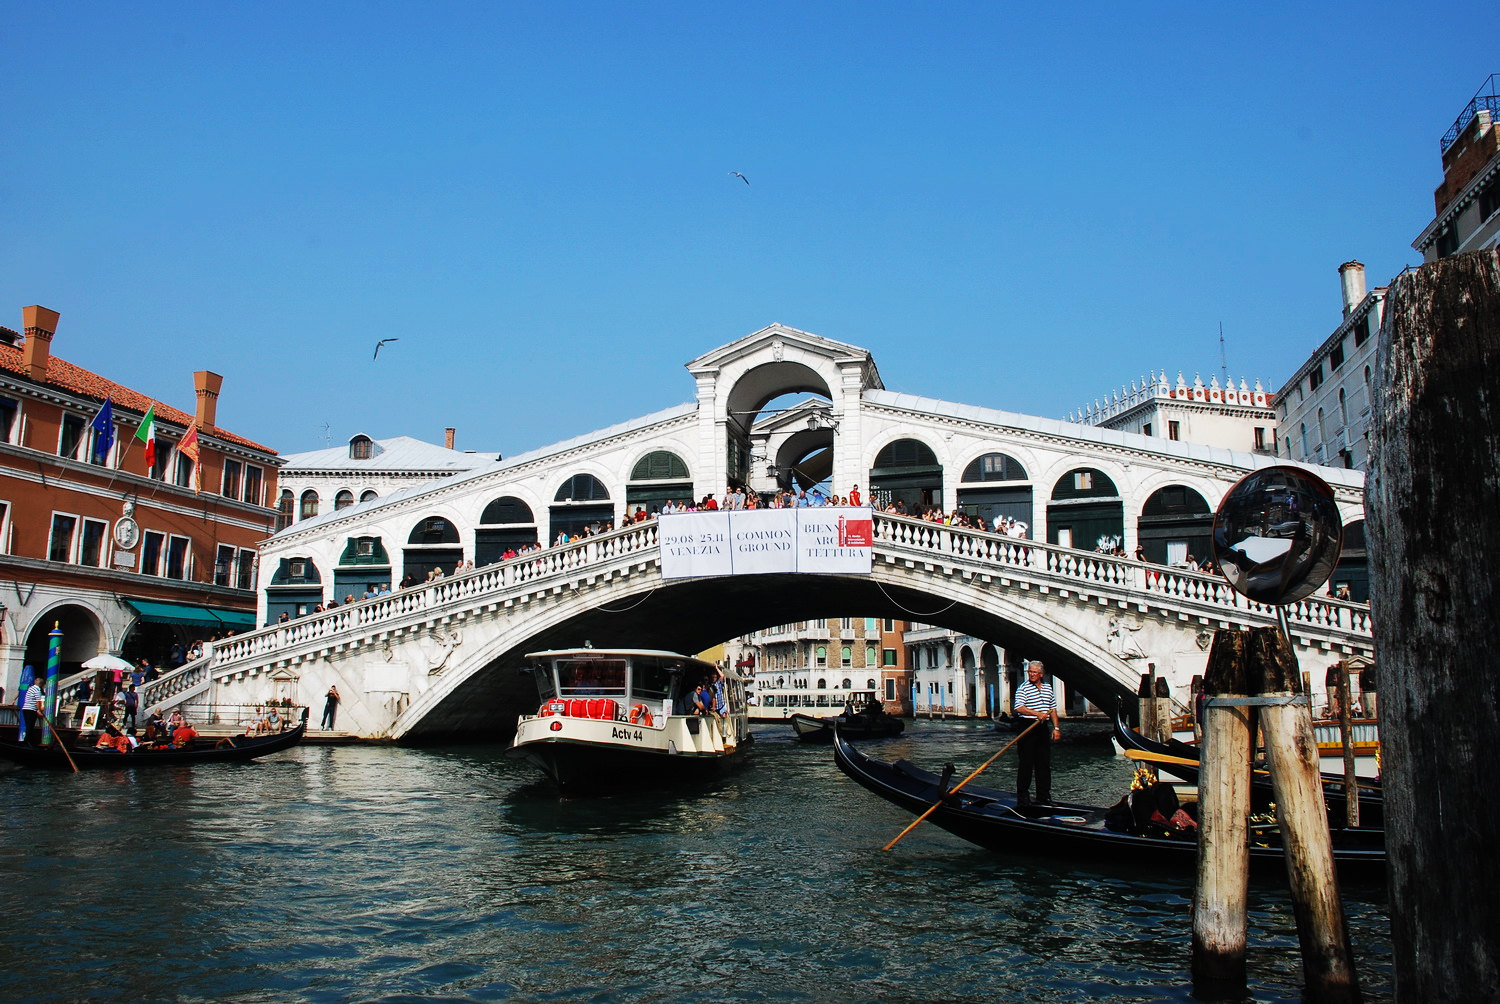 【携程攻略】威尼斯里亚托桥景点,威尼斯最著名的桥,"